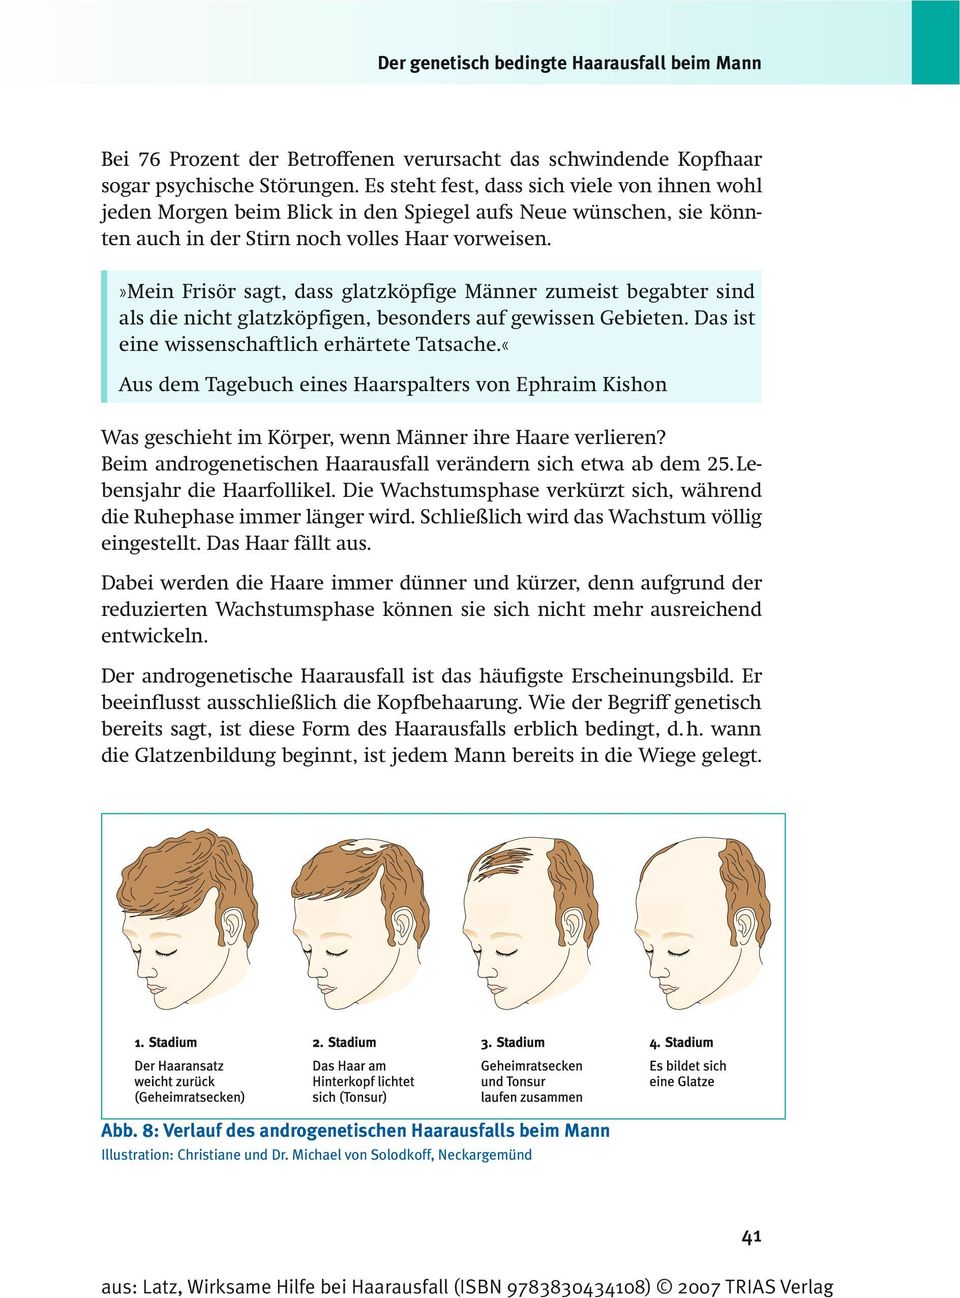 »mein Frisör sagt, dass glatzköpfige Männer zumeist begabter sind als die nicht glatzköpfigen, besonders auf gewissen Gebieten. Das ist eine wissenschaftlich erhärtete Tatsache.